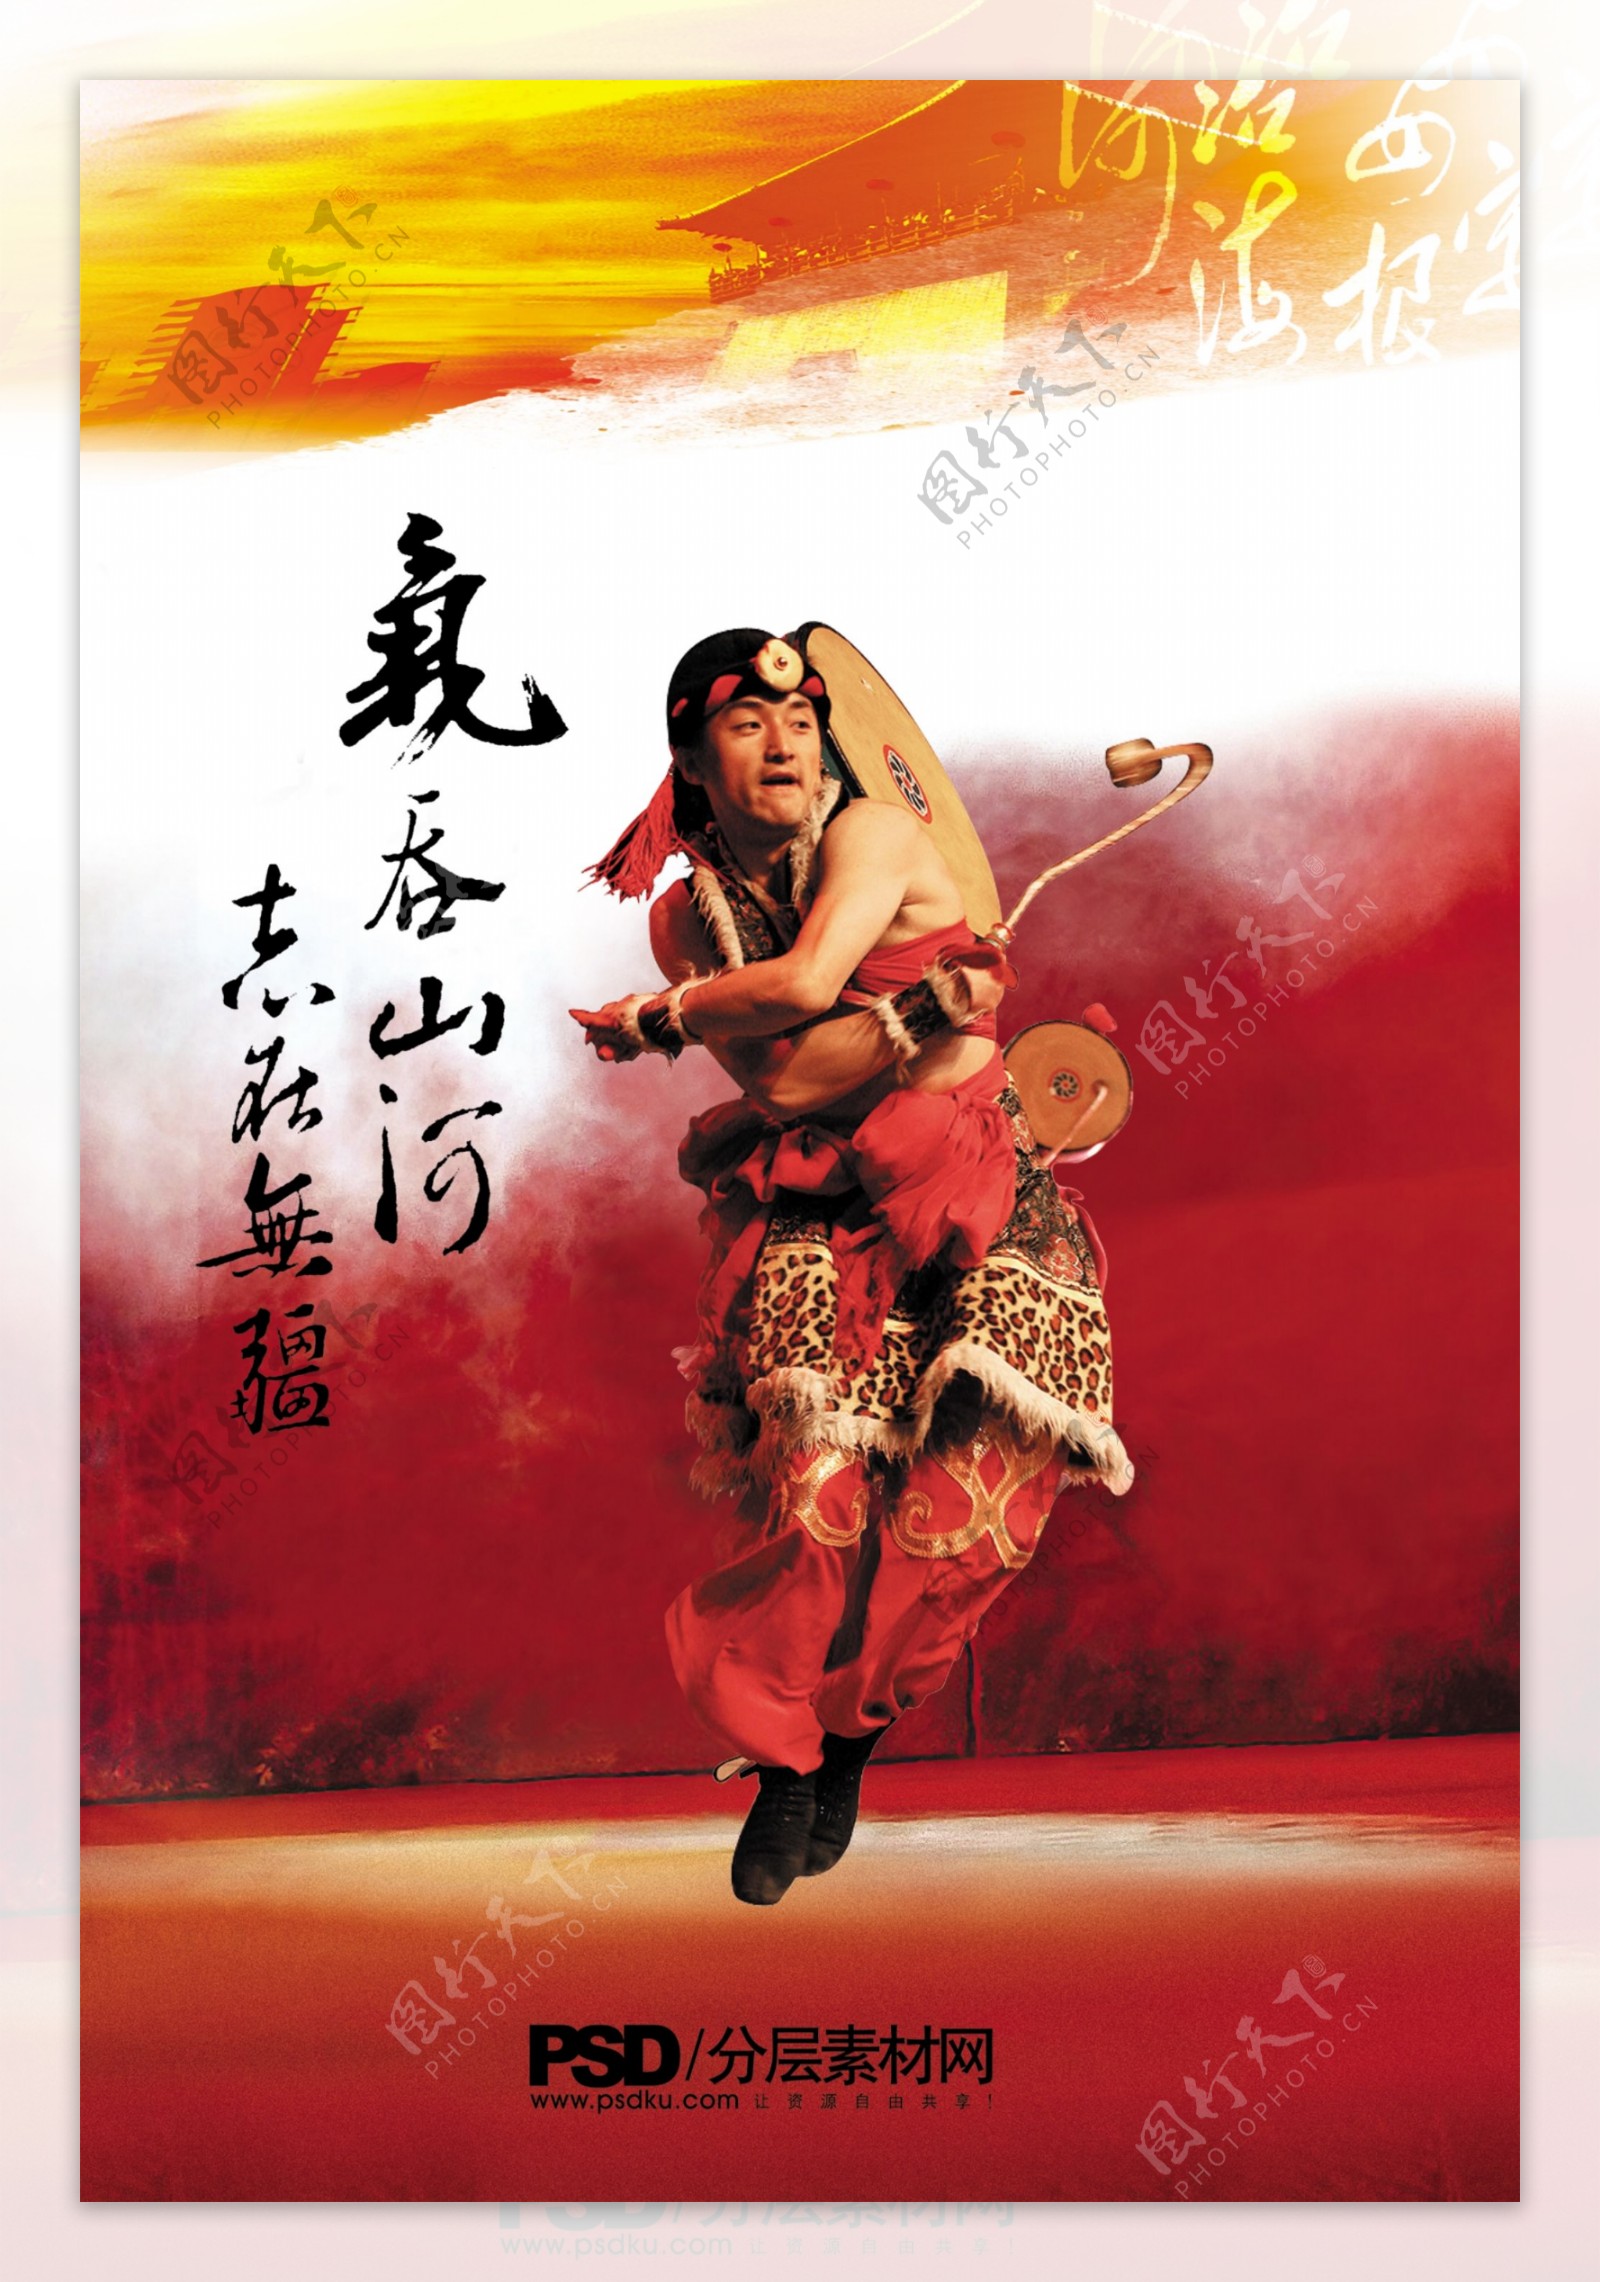 腰鼓舞蹈跳跃欢乐中国元素墨迹目录DM画册封面海报折页PSD分层素材